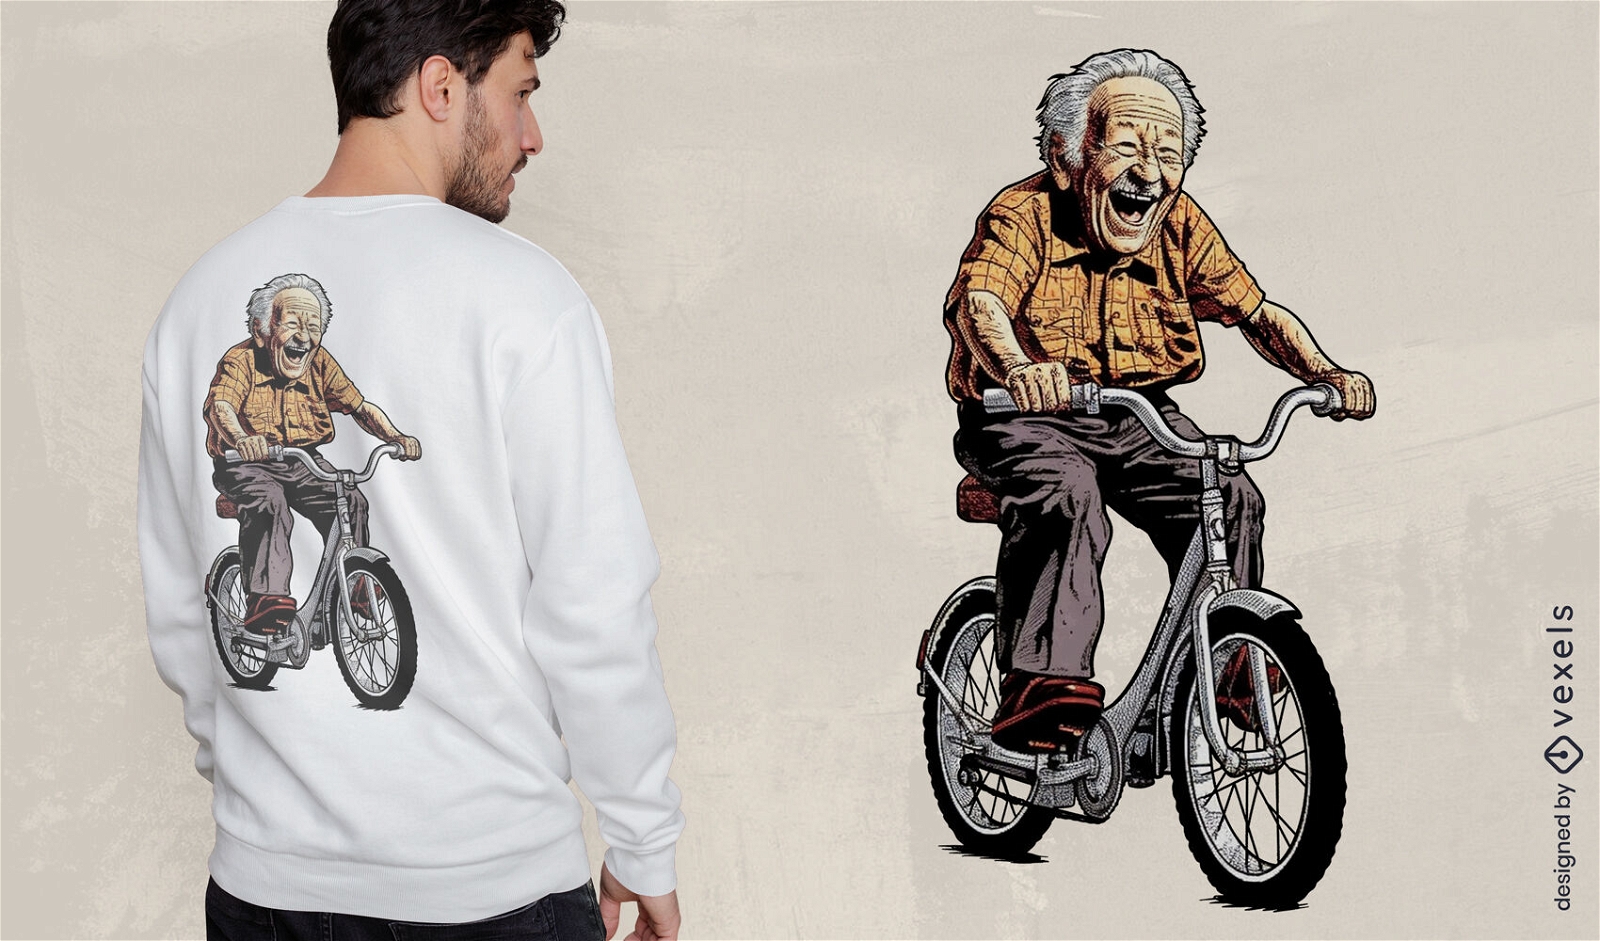 Diseño de camiseta del paseo en bicicleta del abuelo.